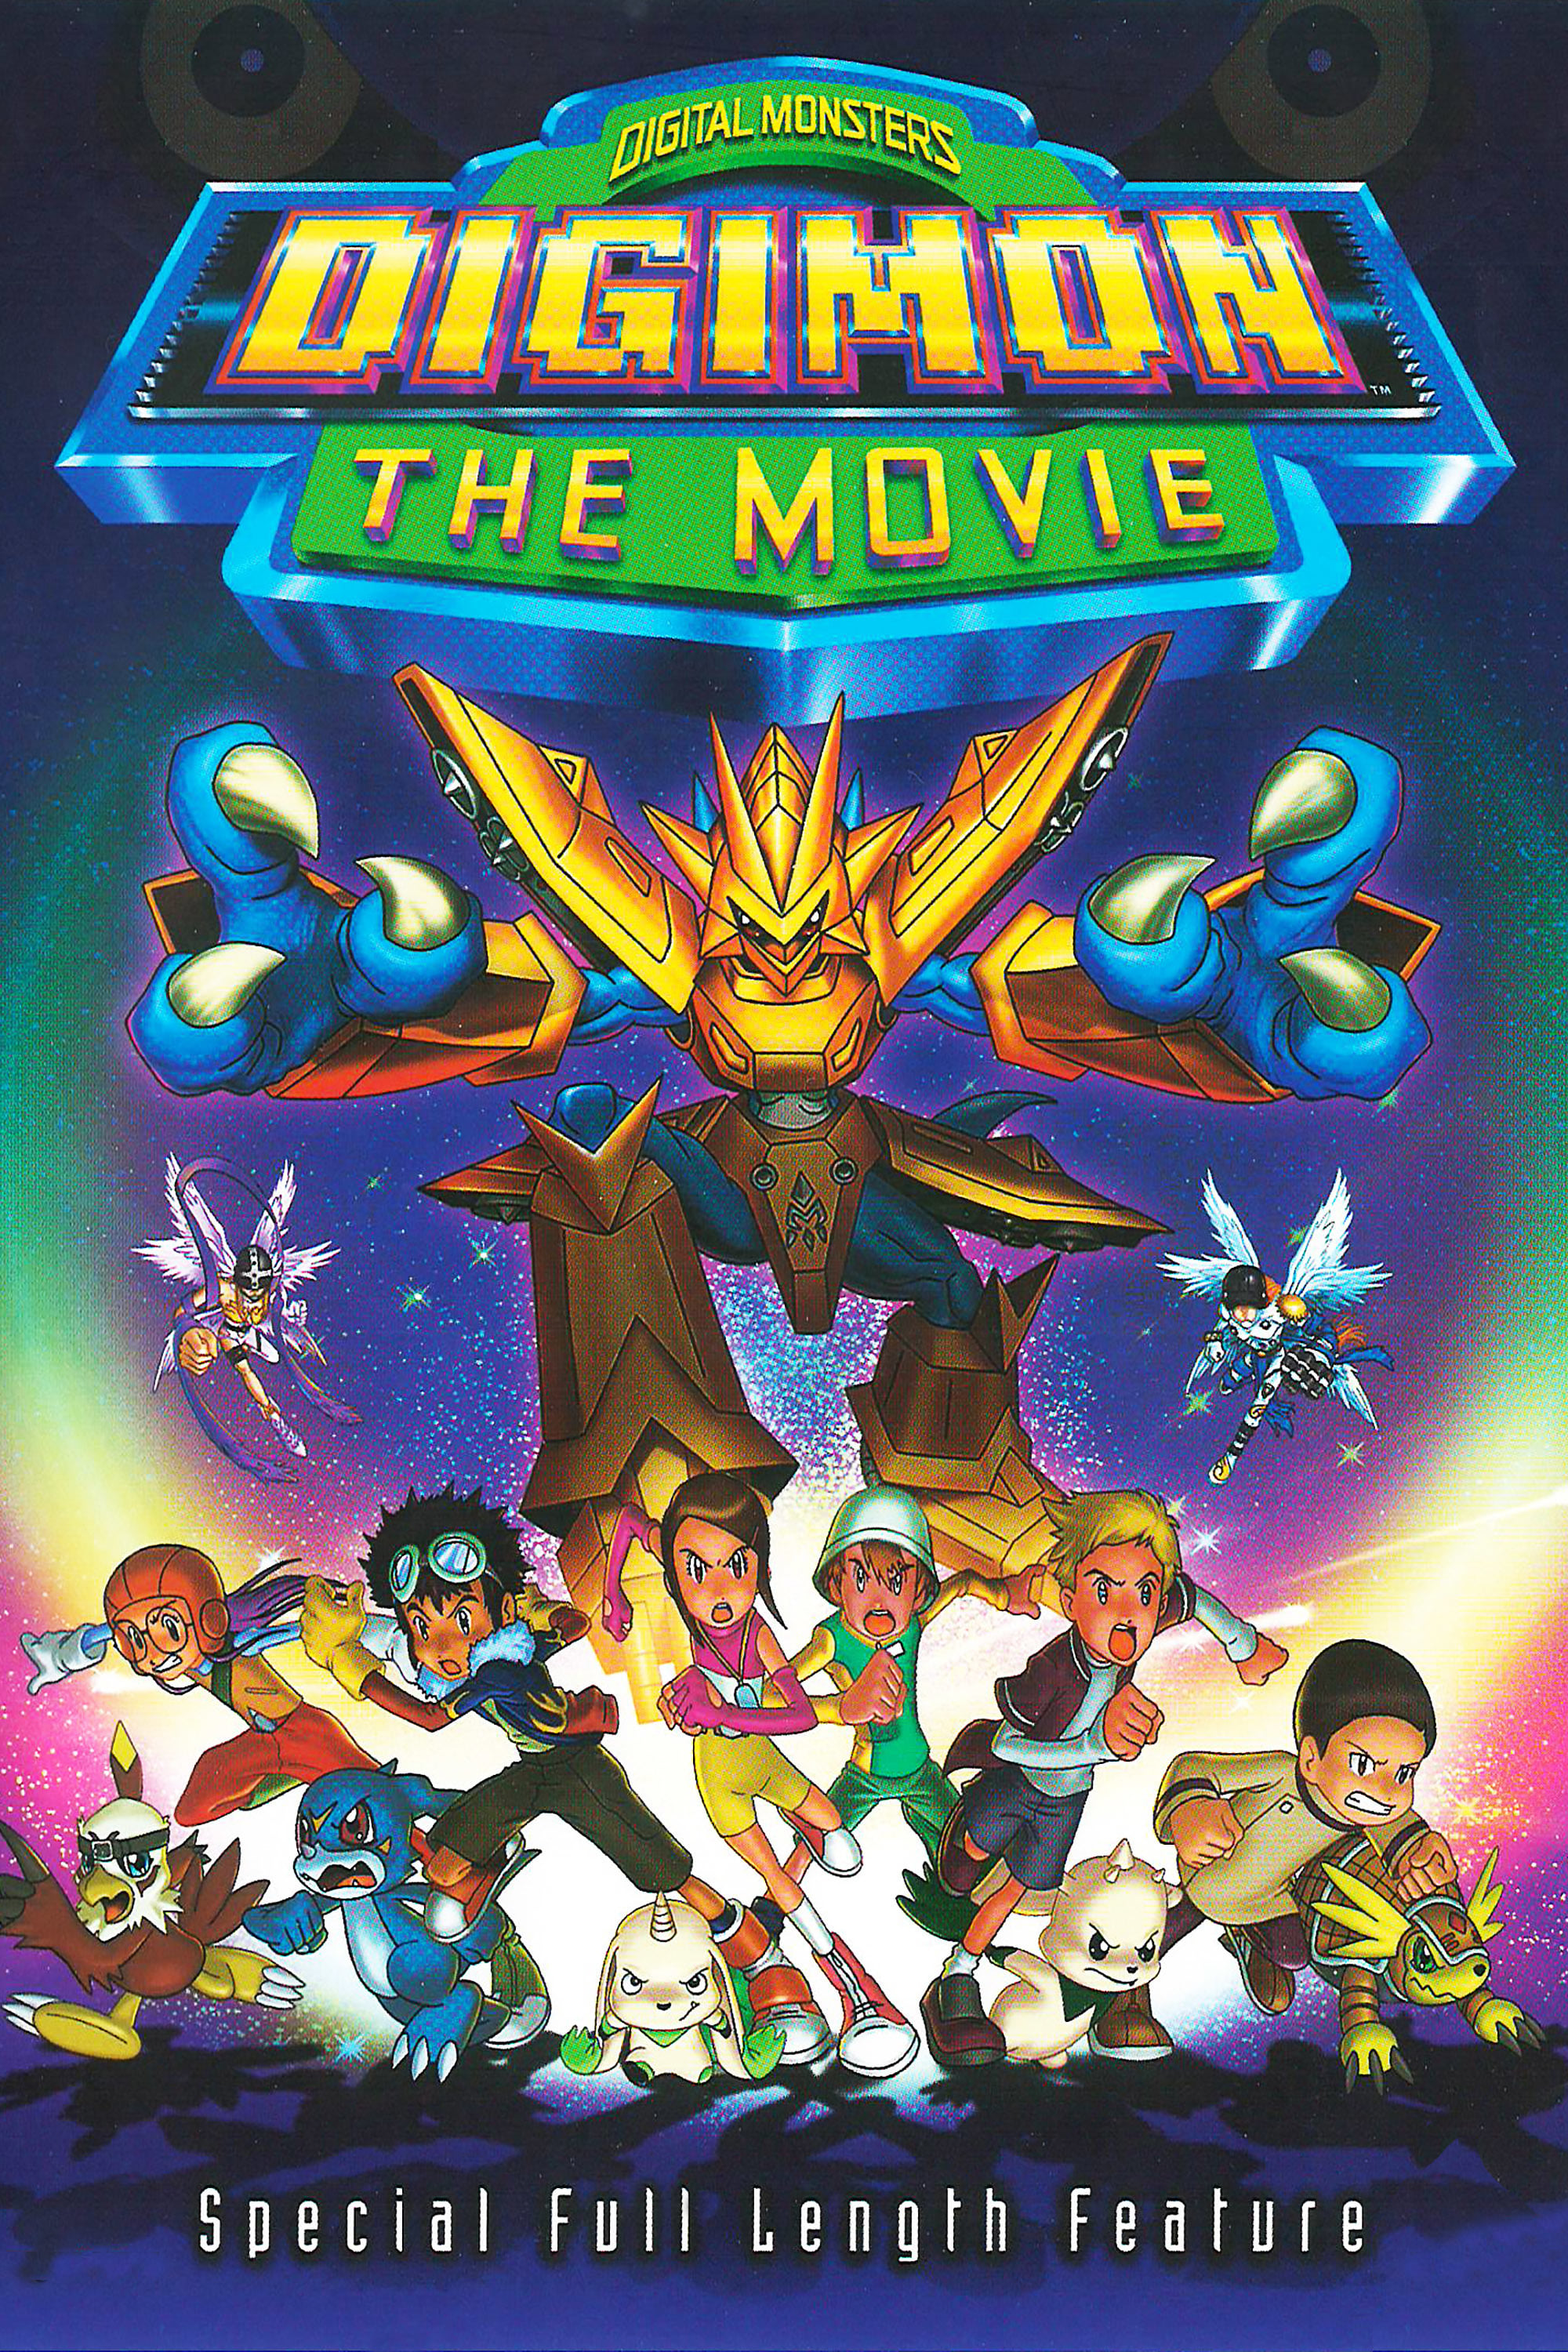 2000 Digimon: The Movie